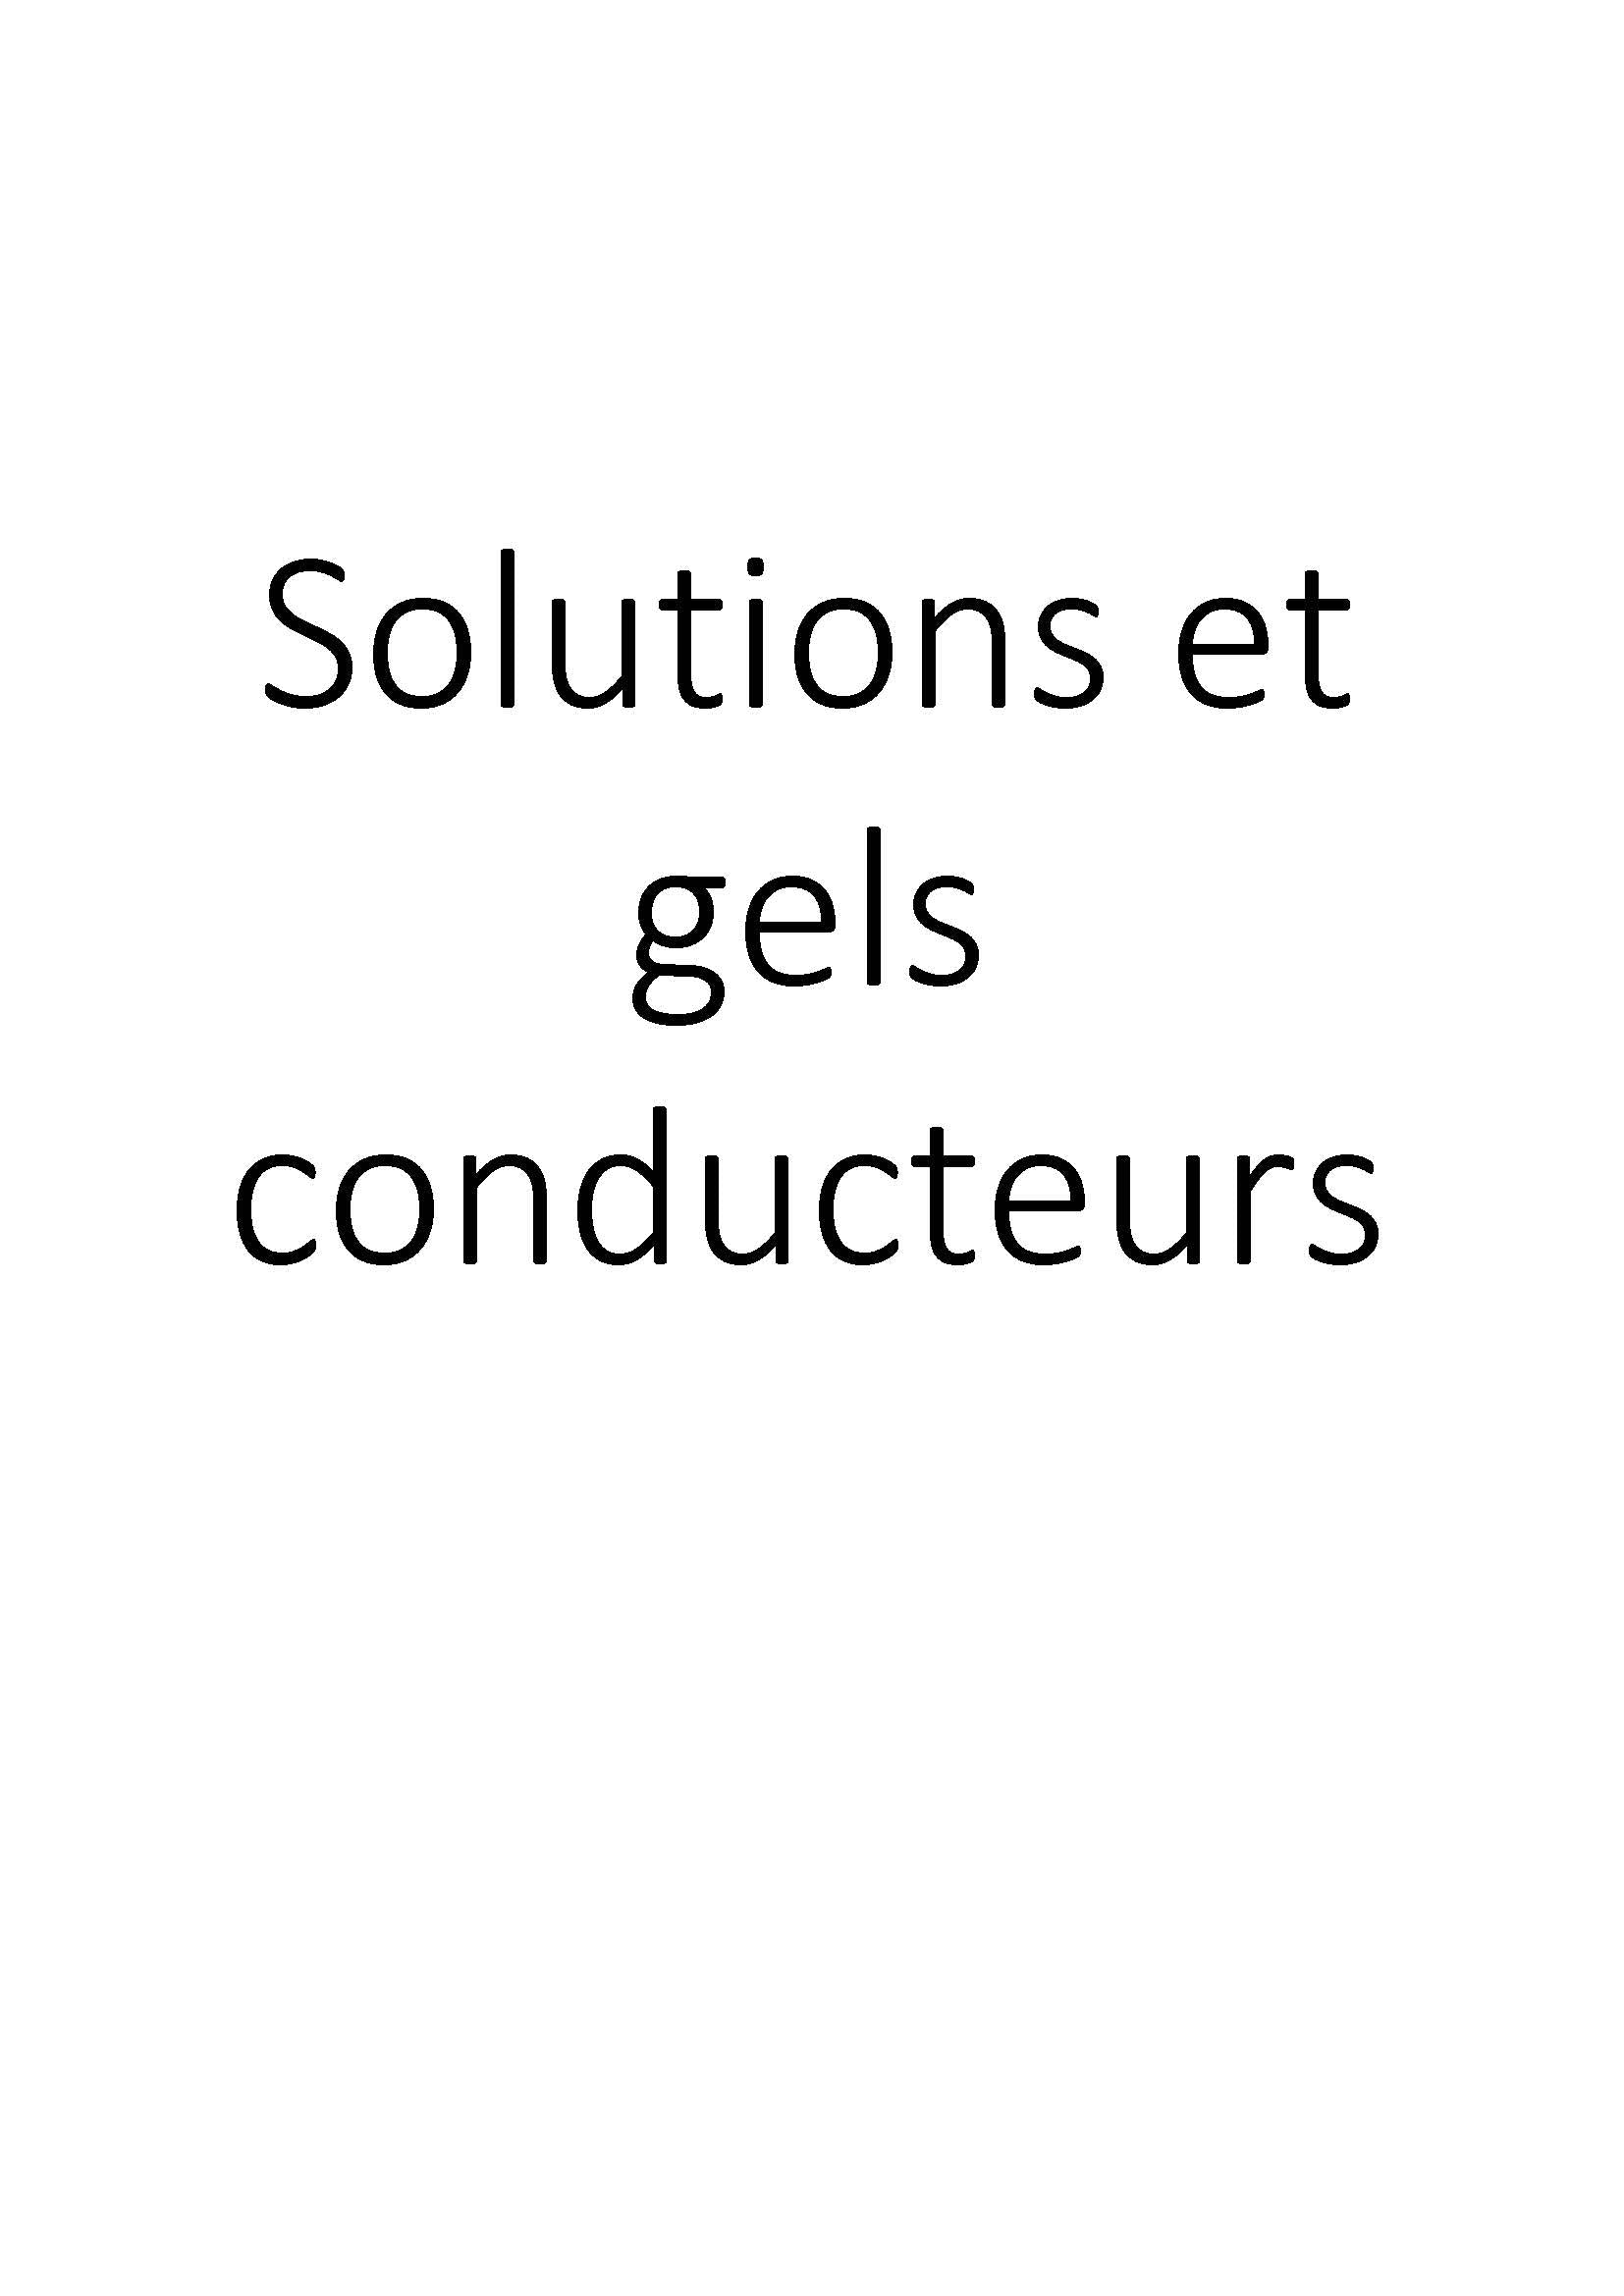 Solutions et gels conducteurs clicktofournisseur.com